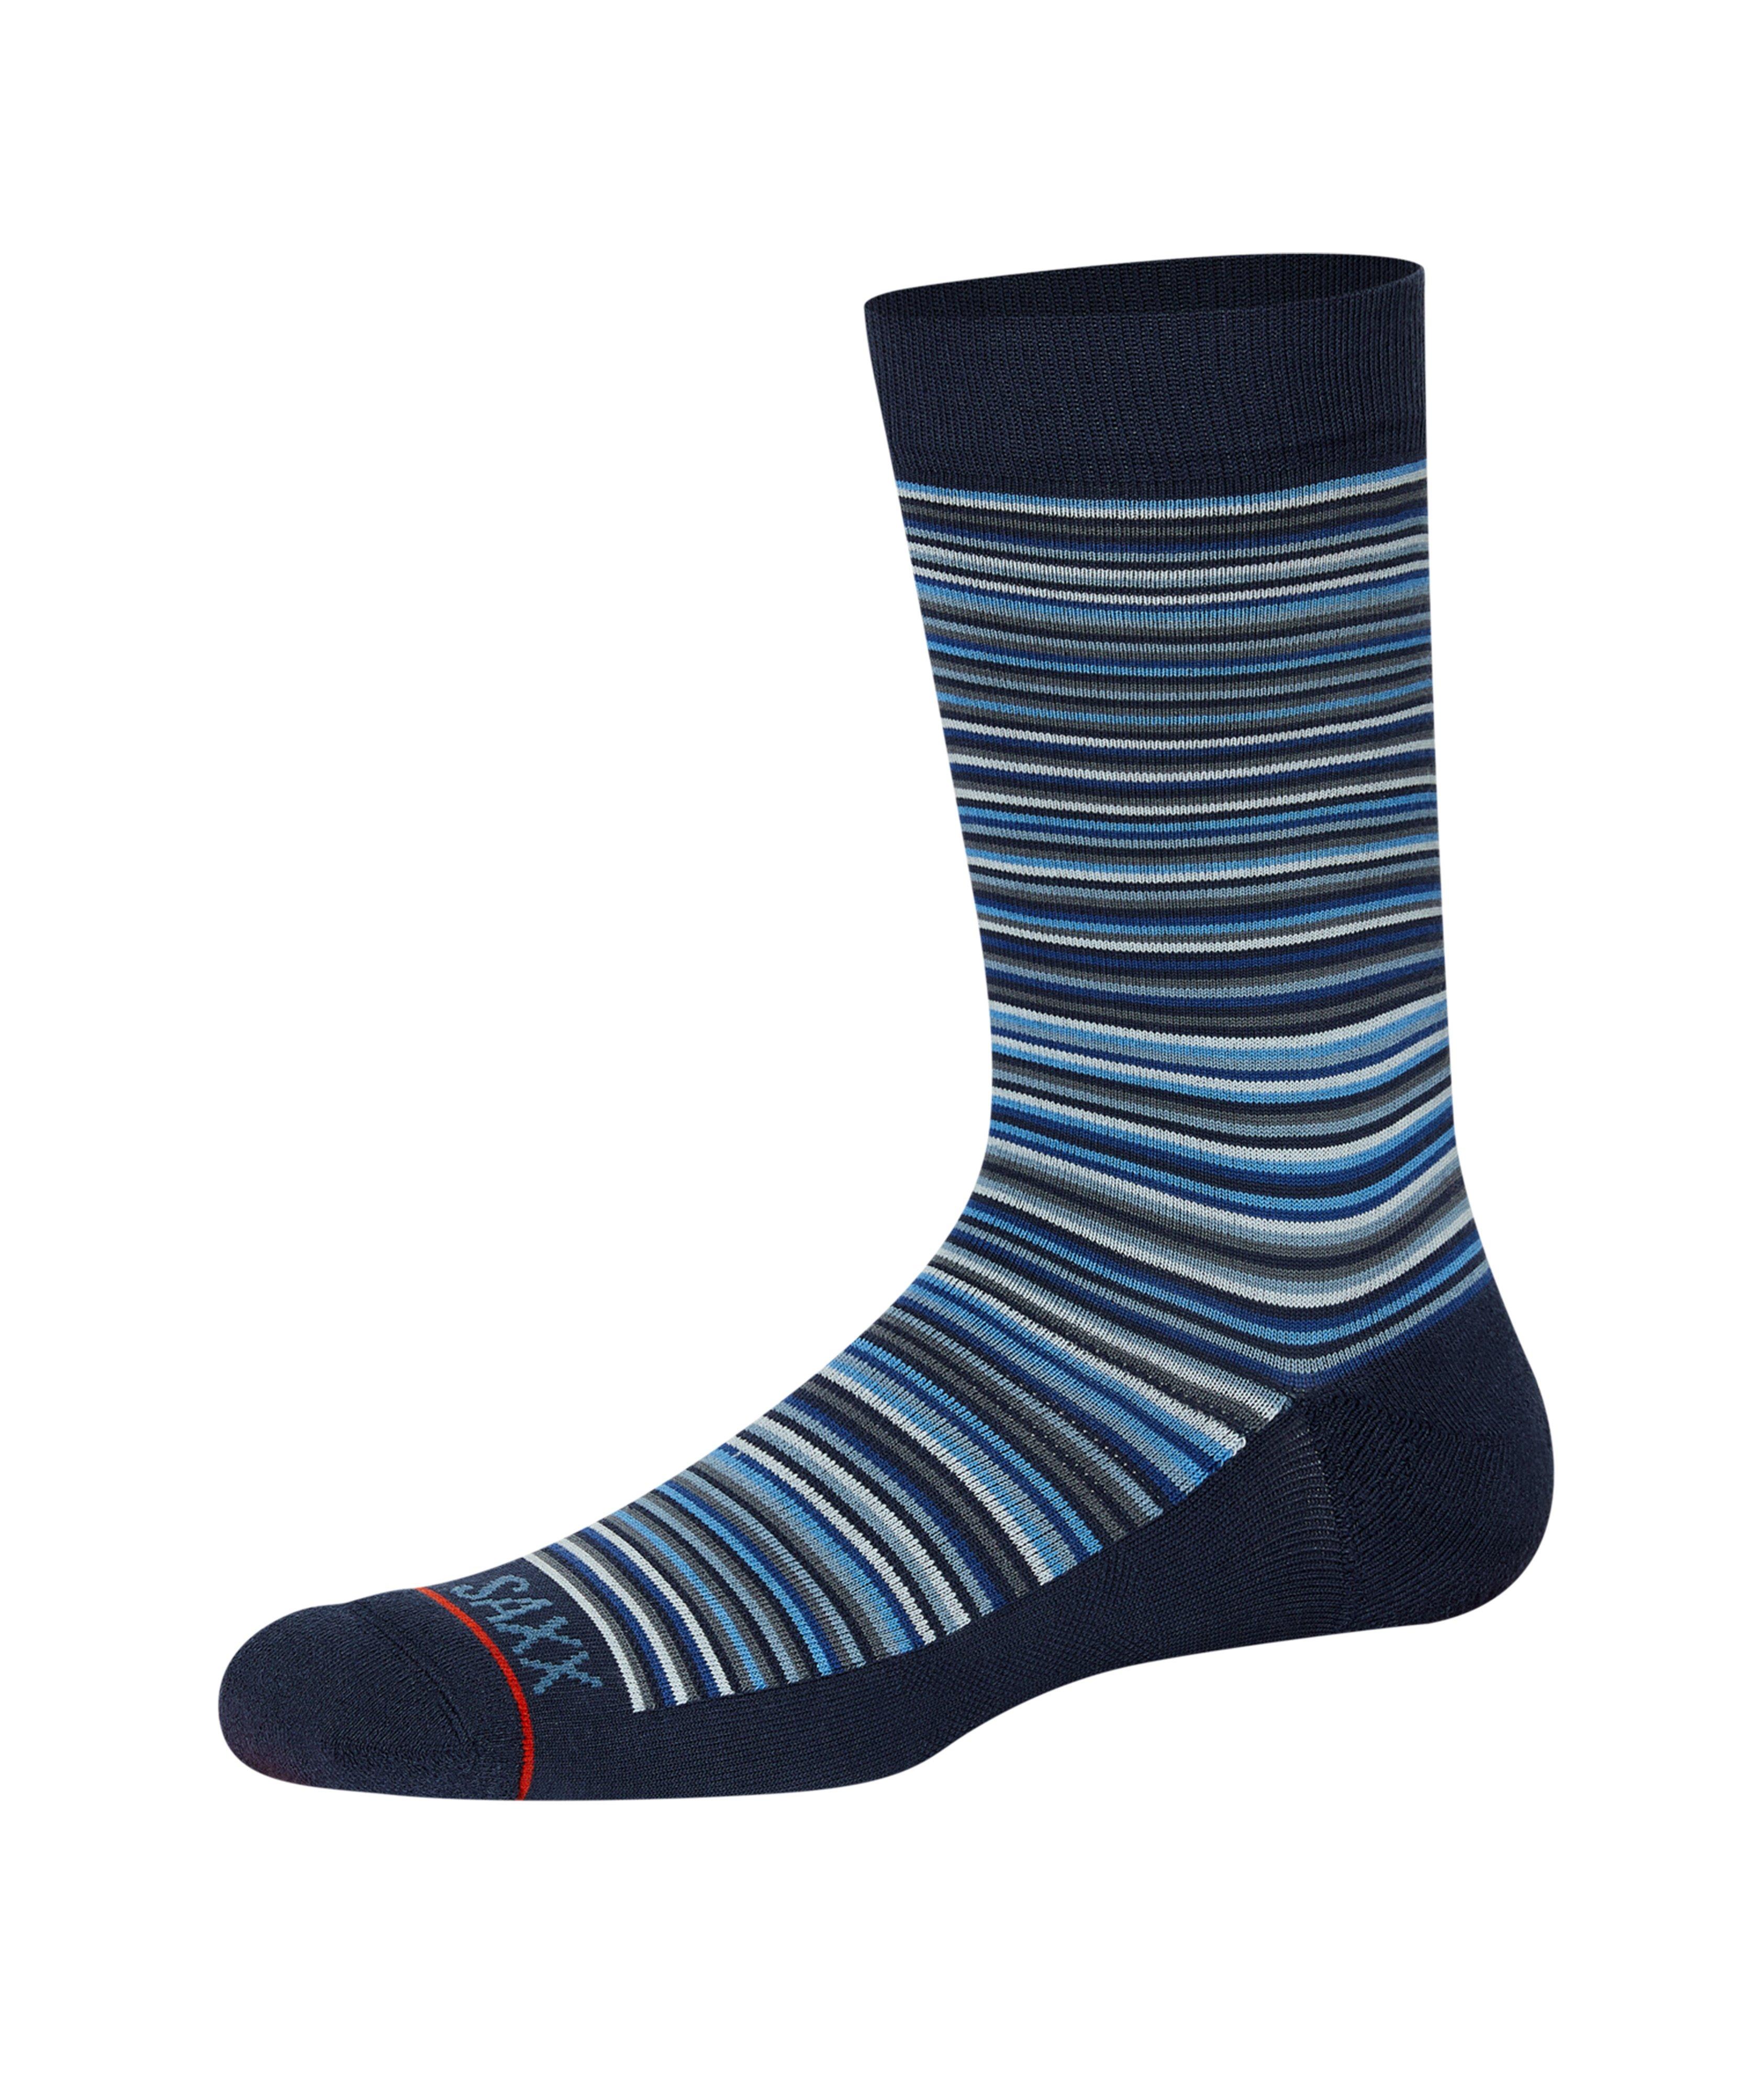 Stripe Patterned Nylon-Blend Crew Socks image 0